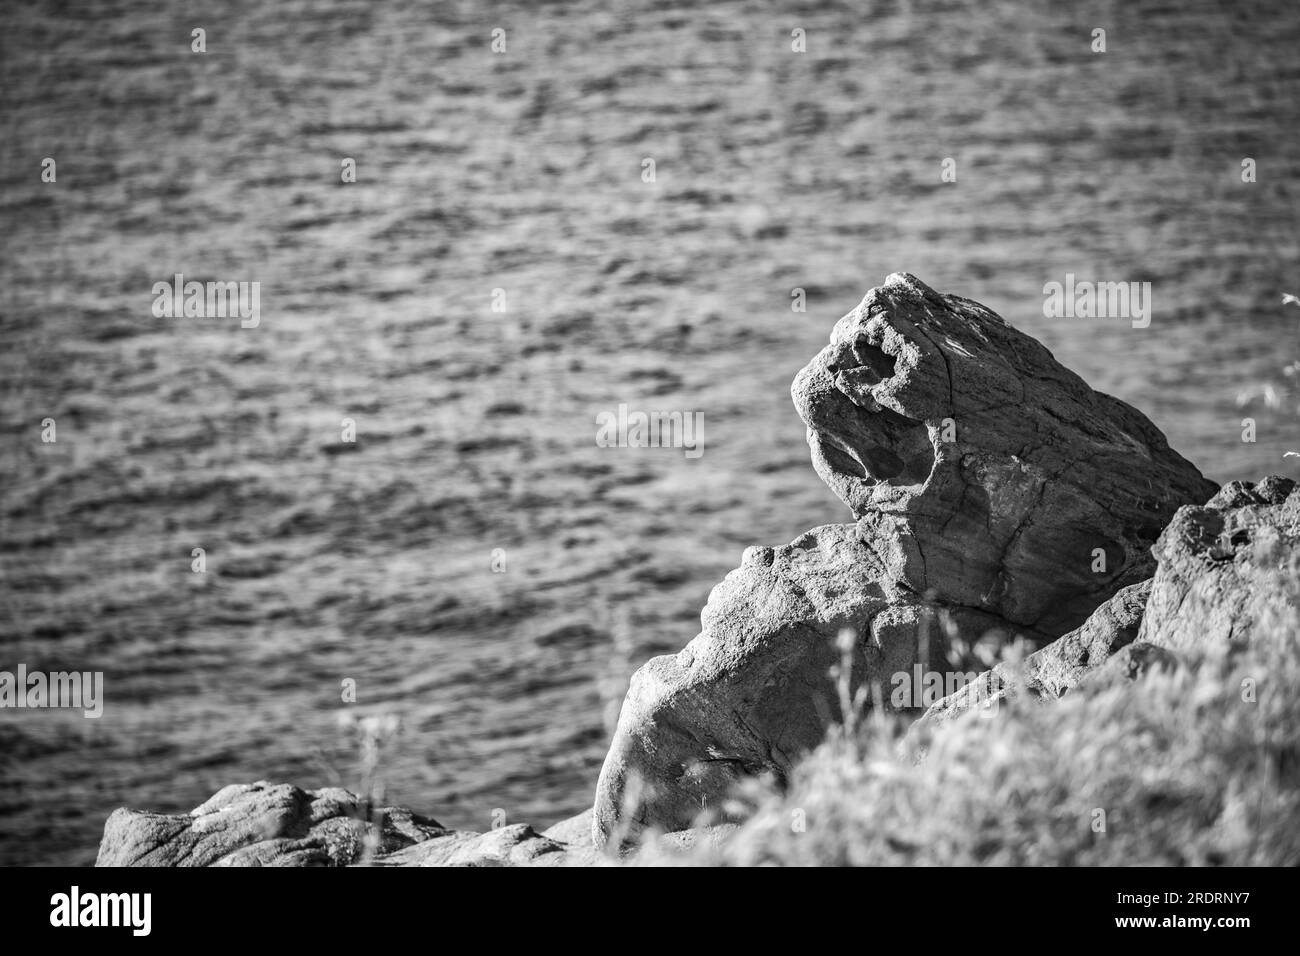 Rocher sur le rivage pierreux ressemblant à la tête d'un lion. Mer Noire. Région de Burgas, Bulgarie, image monochromatique noir et blanc Banque D'Images